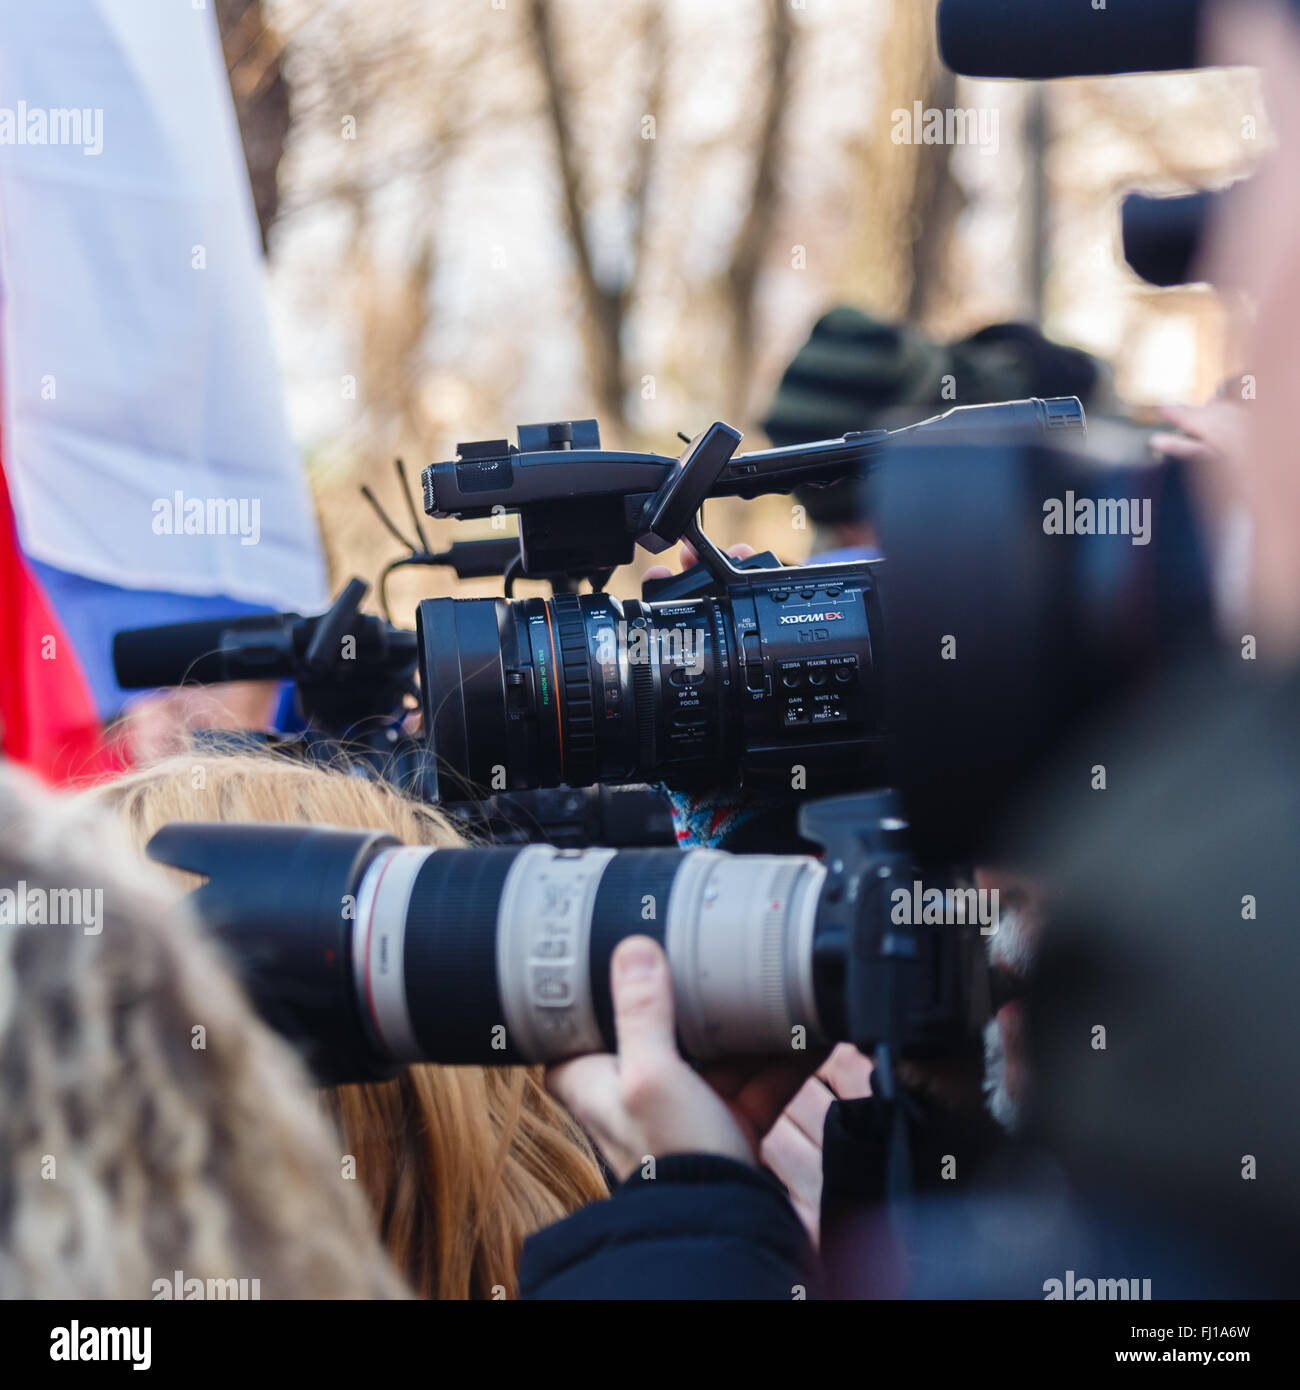 Mosca, Russia. Il 27 febbraio, 2016. Processione di opposizione in memoria del politico Boris Nemtsov ucciso un anno fa. I giornalisti e i fotografi lavorano a un evento pubblico. Credito: Sergey Podkolzin/Alamy Live News Foto Stock